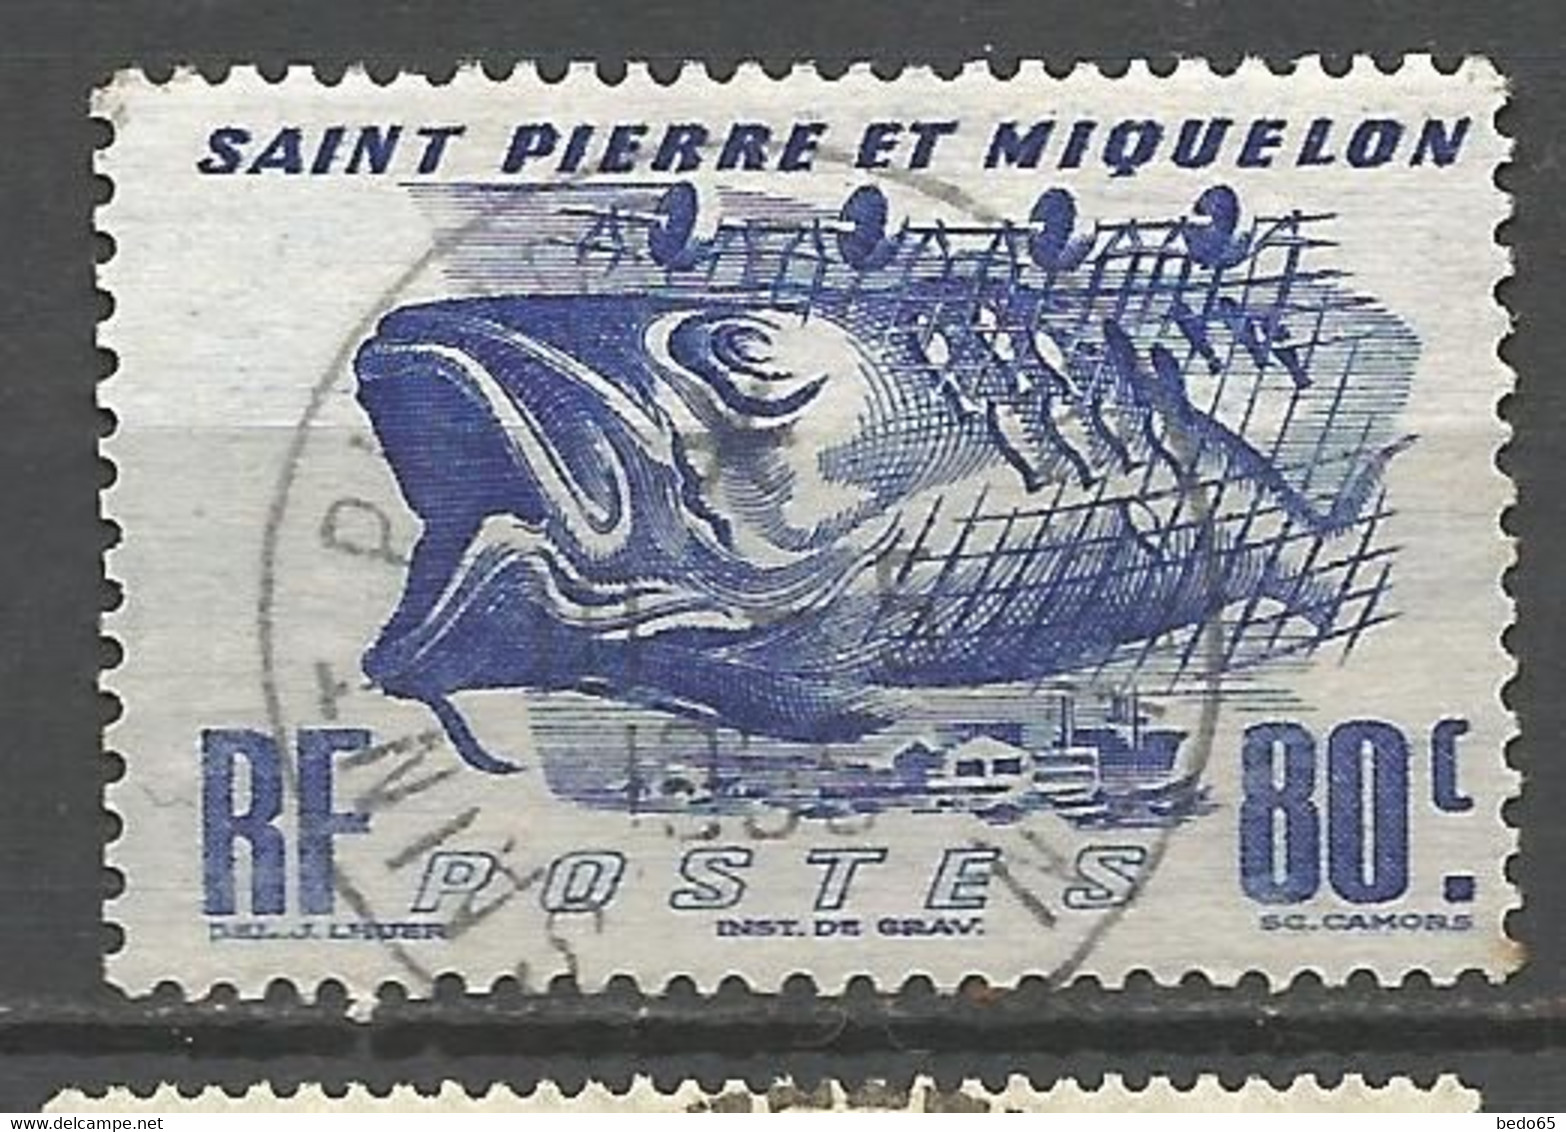 ST PIERRE ET MIQUELON N° 330 CACHET ST P ET MIQUELON - Used Stamps